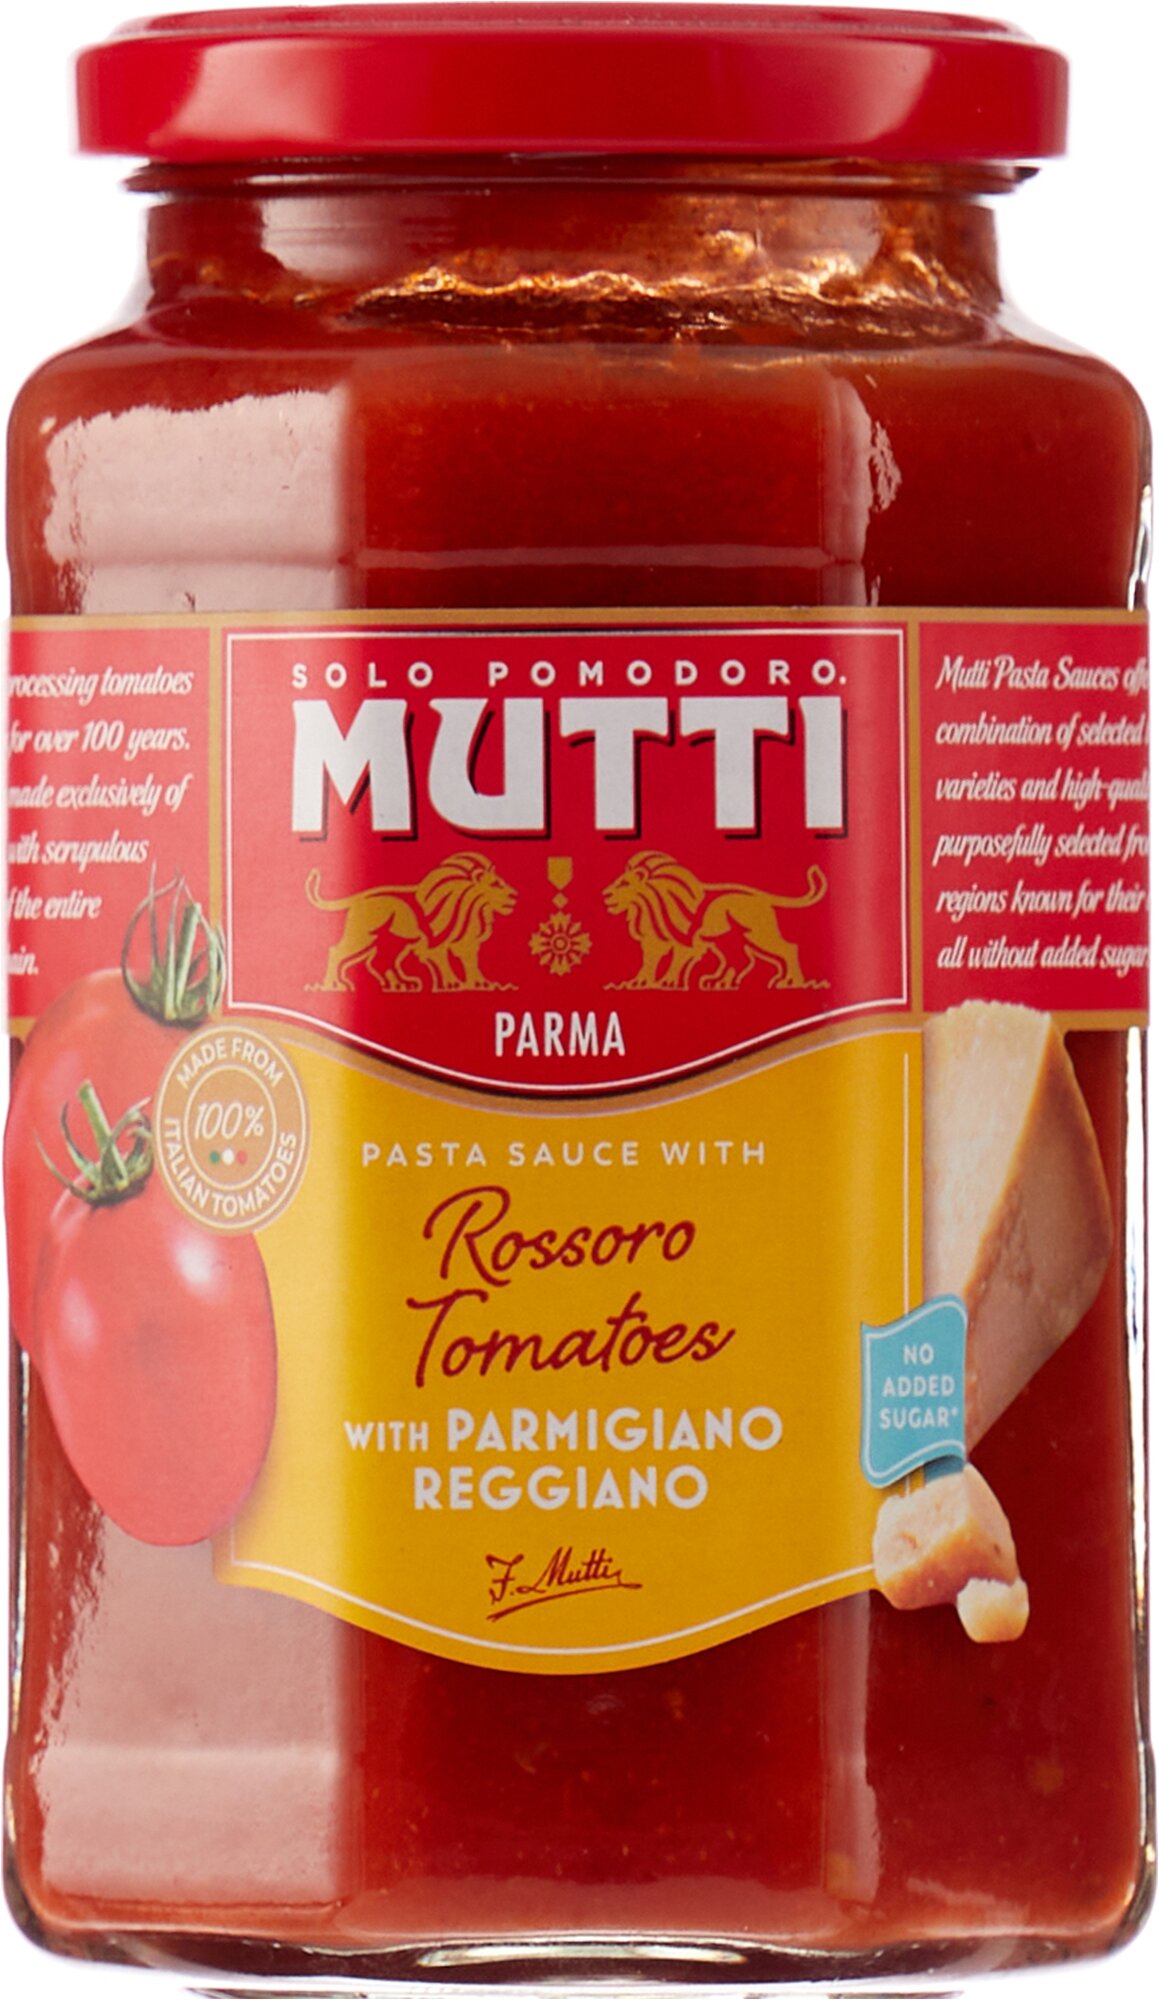 mutti томатный соус для пиццы ароматизированный фото 86